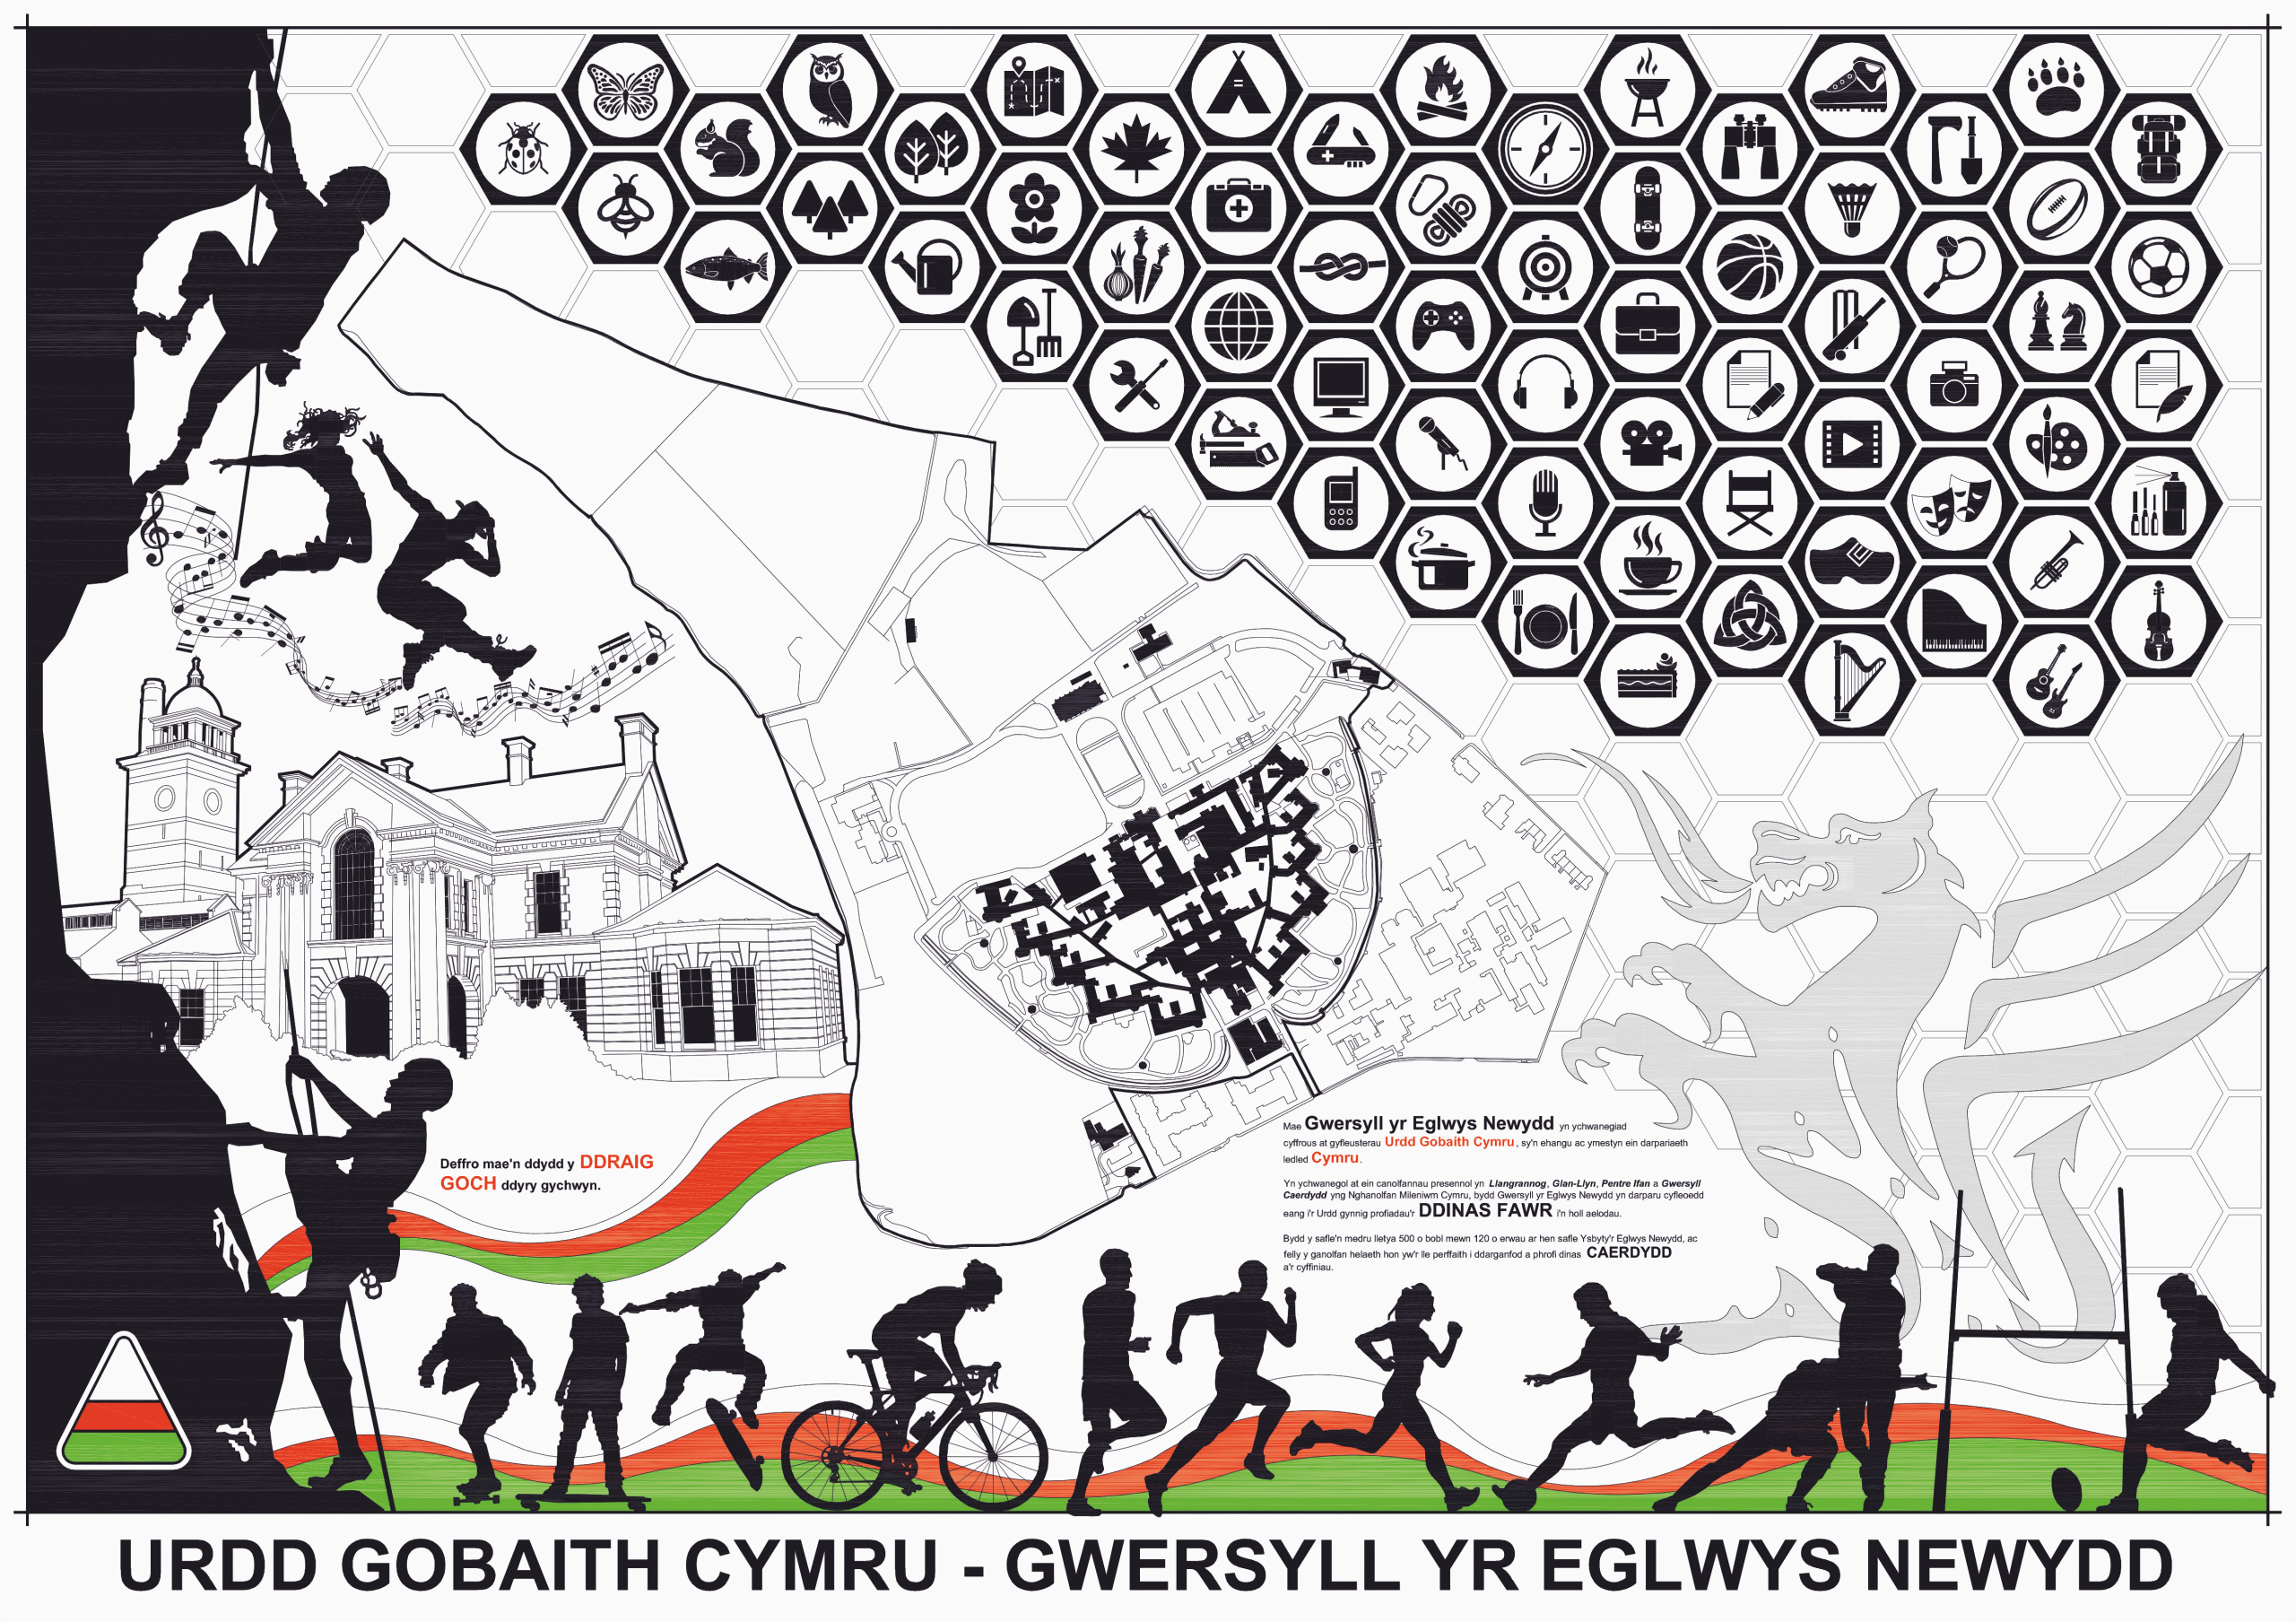 Urdd Gobaith Cymru - Gwersyll Yr Eglwys Newydd